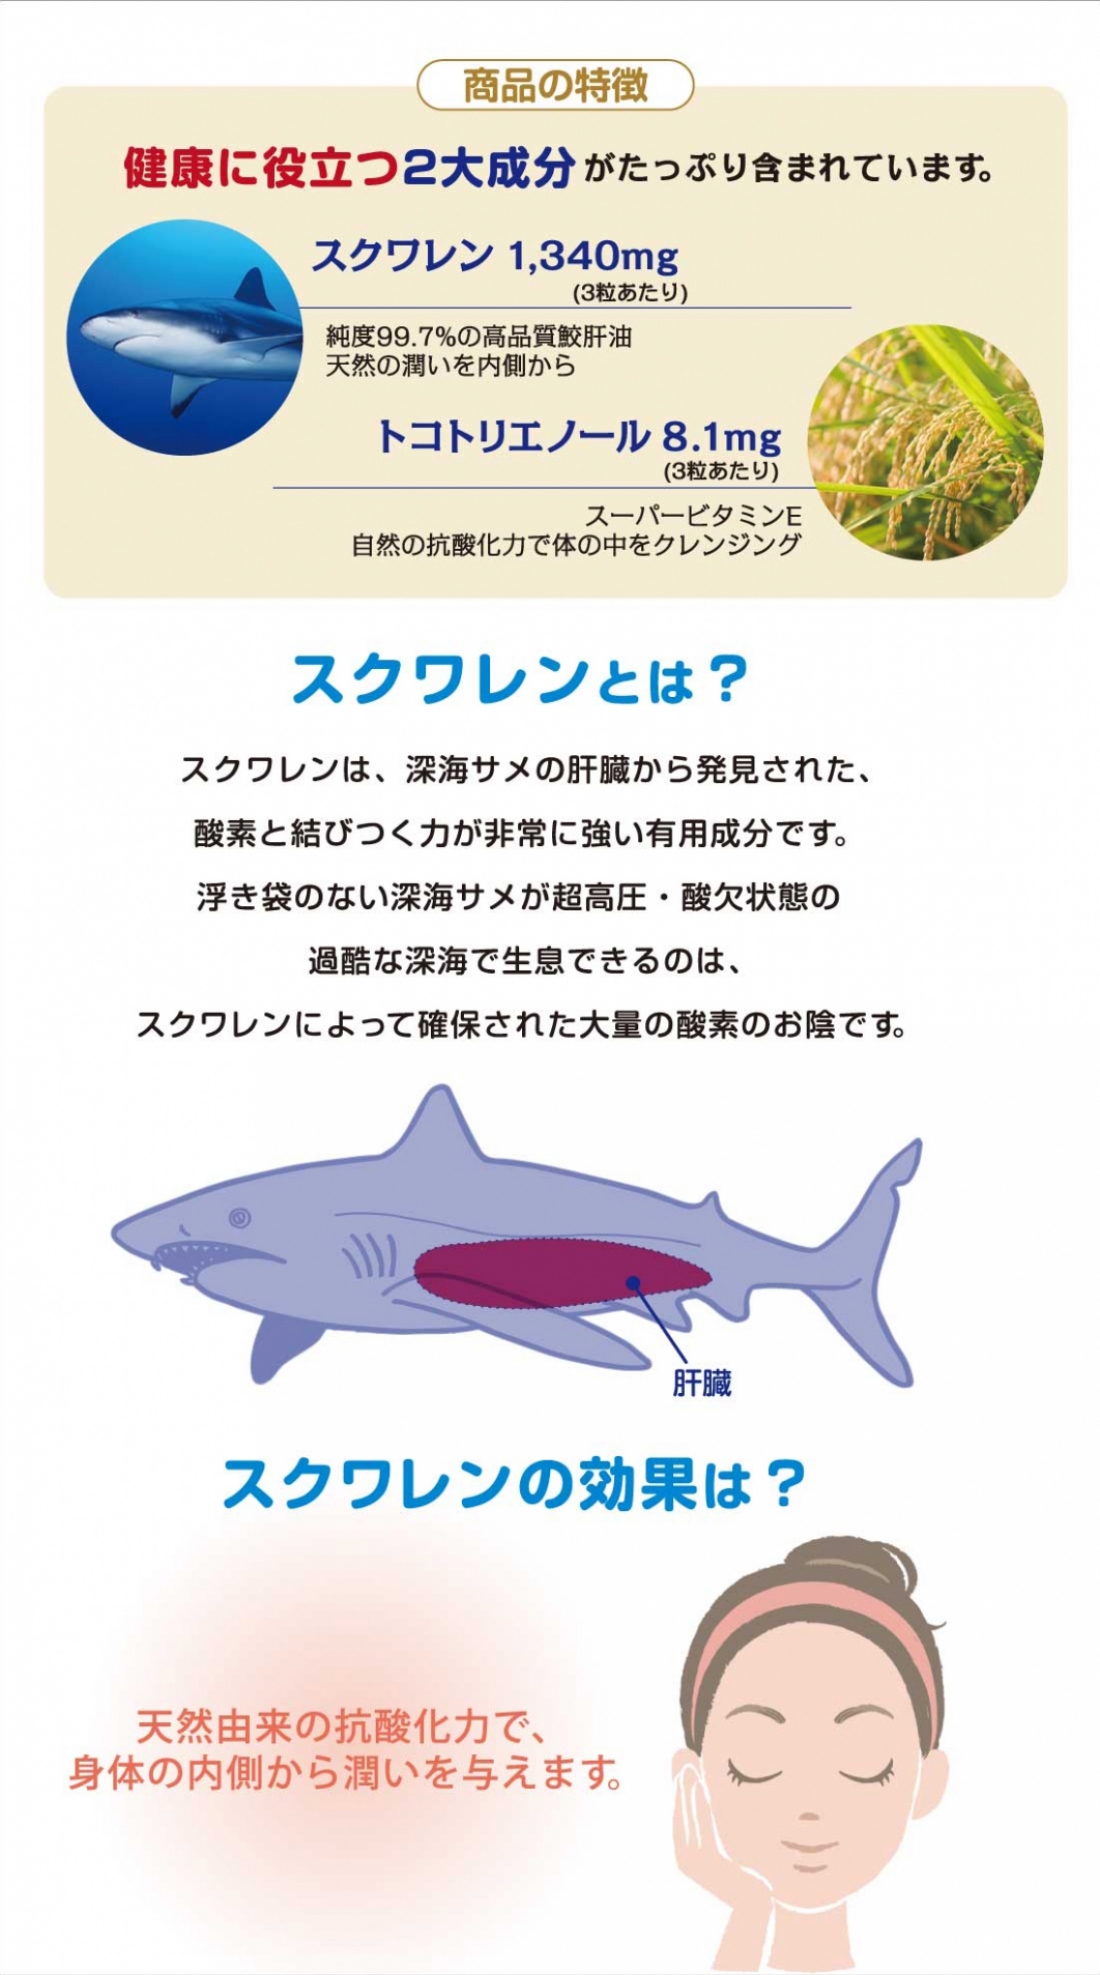 スーパー深海鮫スクワレンピュア Super Squalene Pure健康食品スーパーシリーズ|株式会社愛粧堂